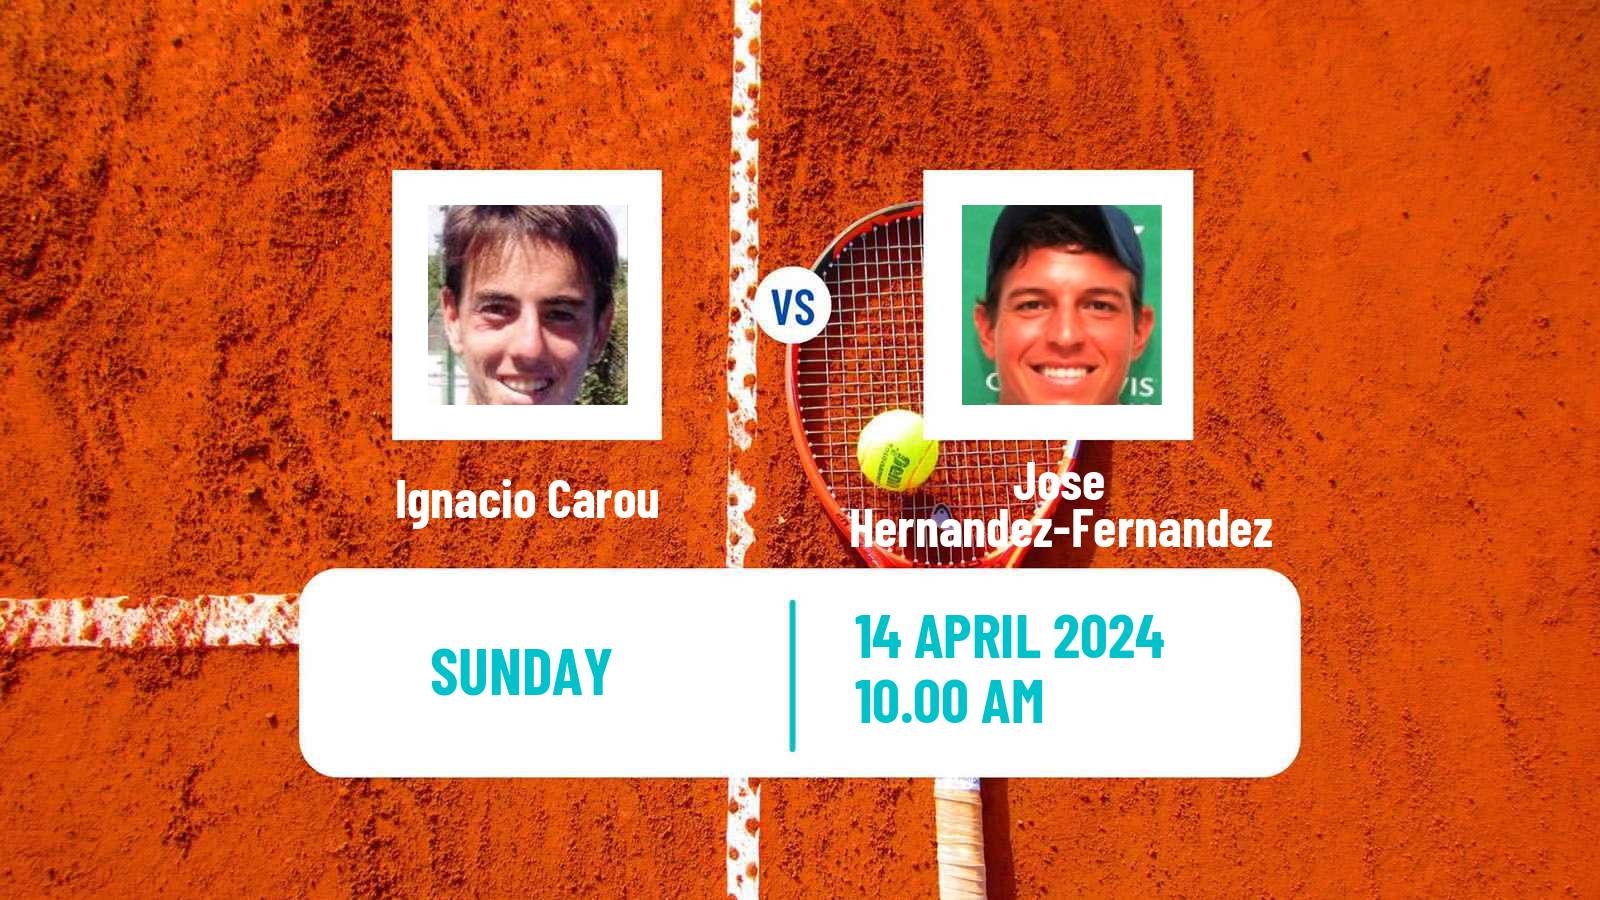 Tennis San Miguel De Tucuman Challenger Men Ignacio Carou - Jose Hernandez-Fernandez